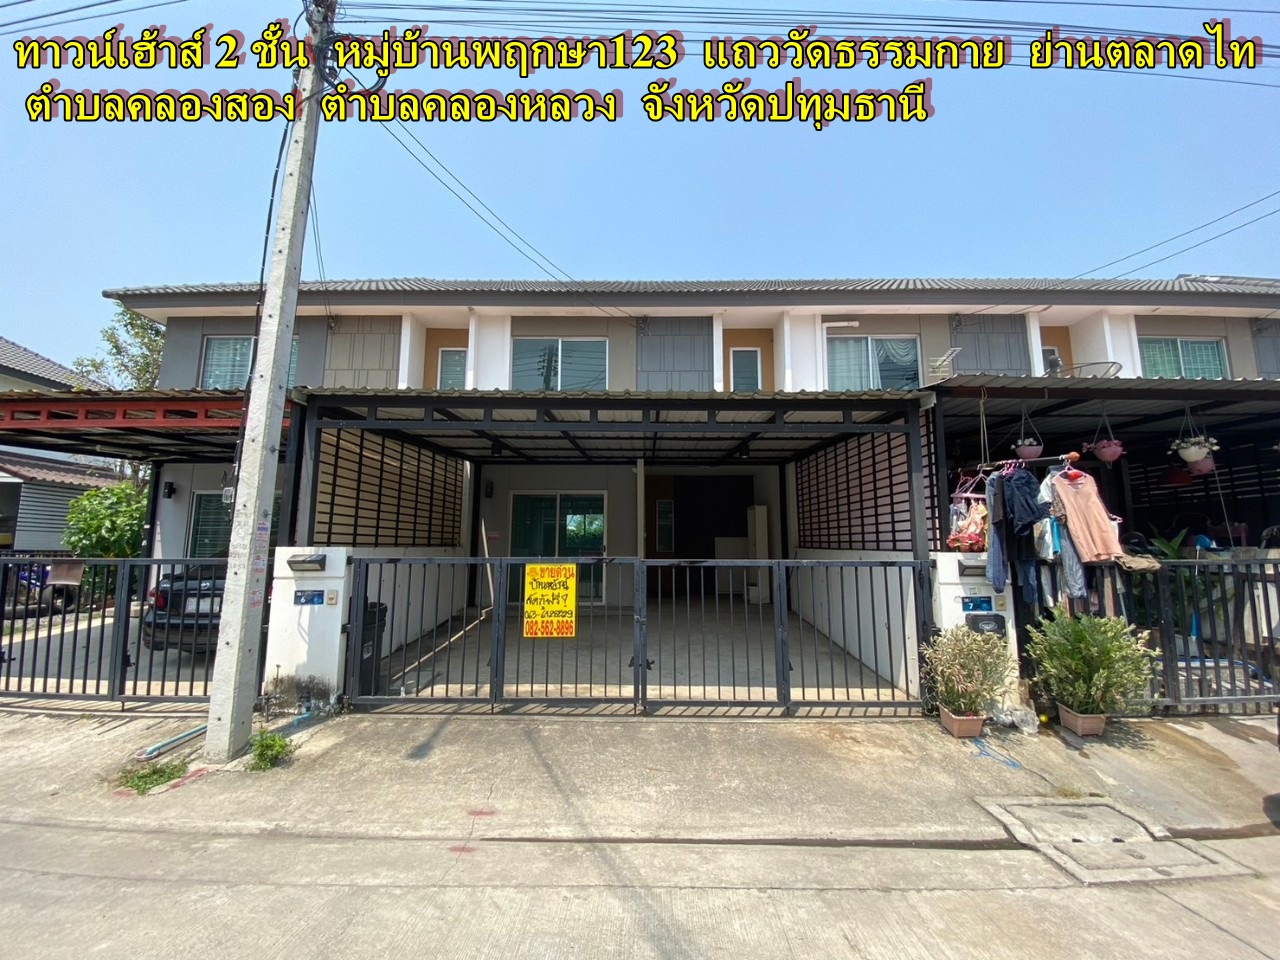 2-storey townhouse for sale in Pruksa Village 123 Around Wat Dhammakaya, Talat Thai area (Khlong Song, Klong Luang)